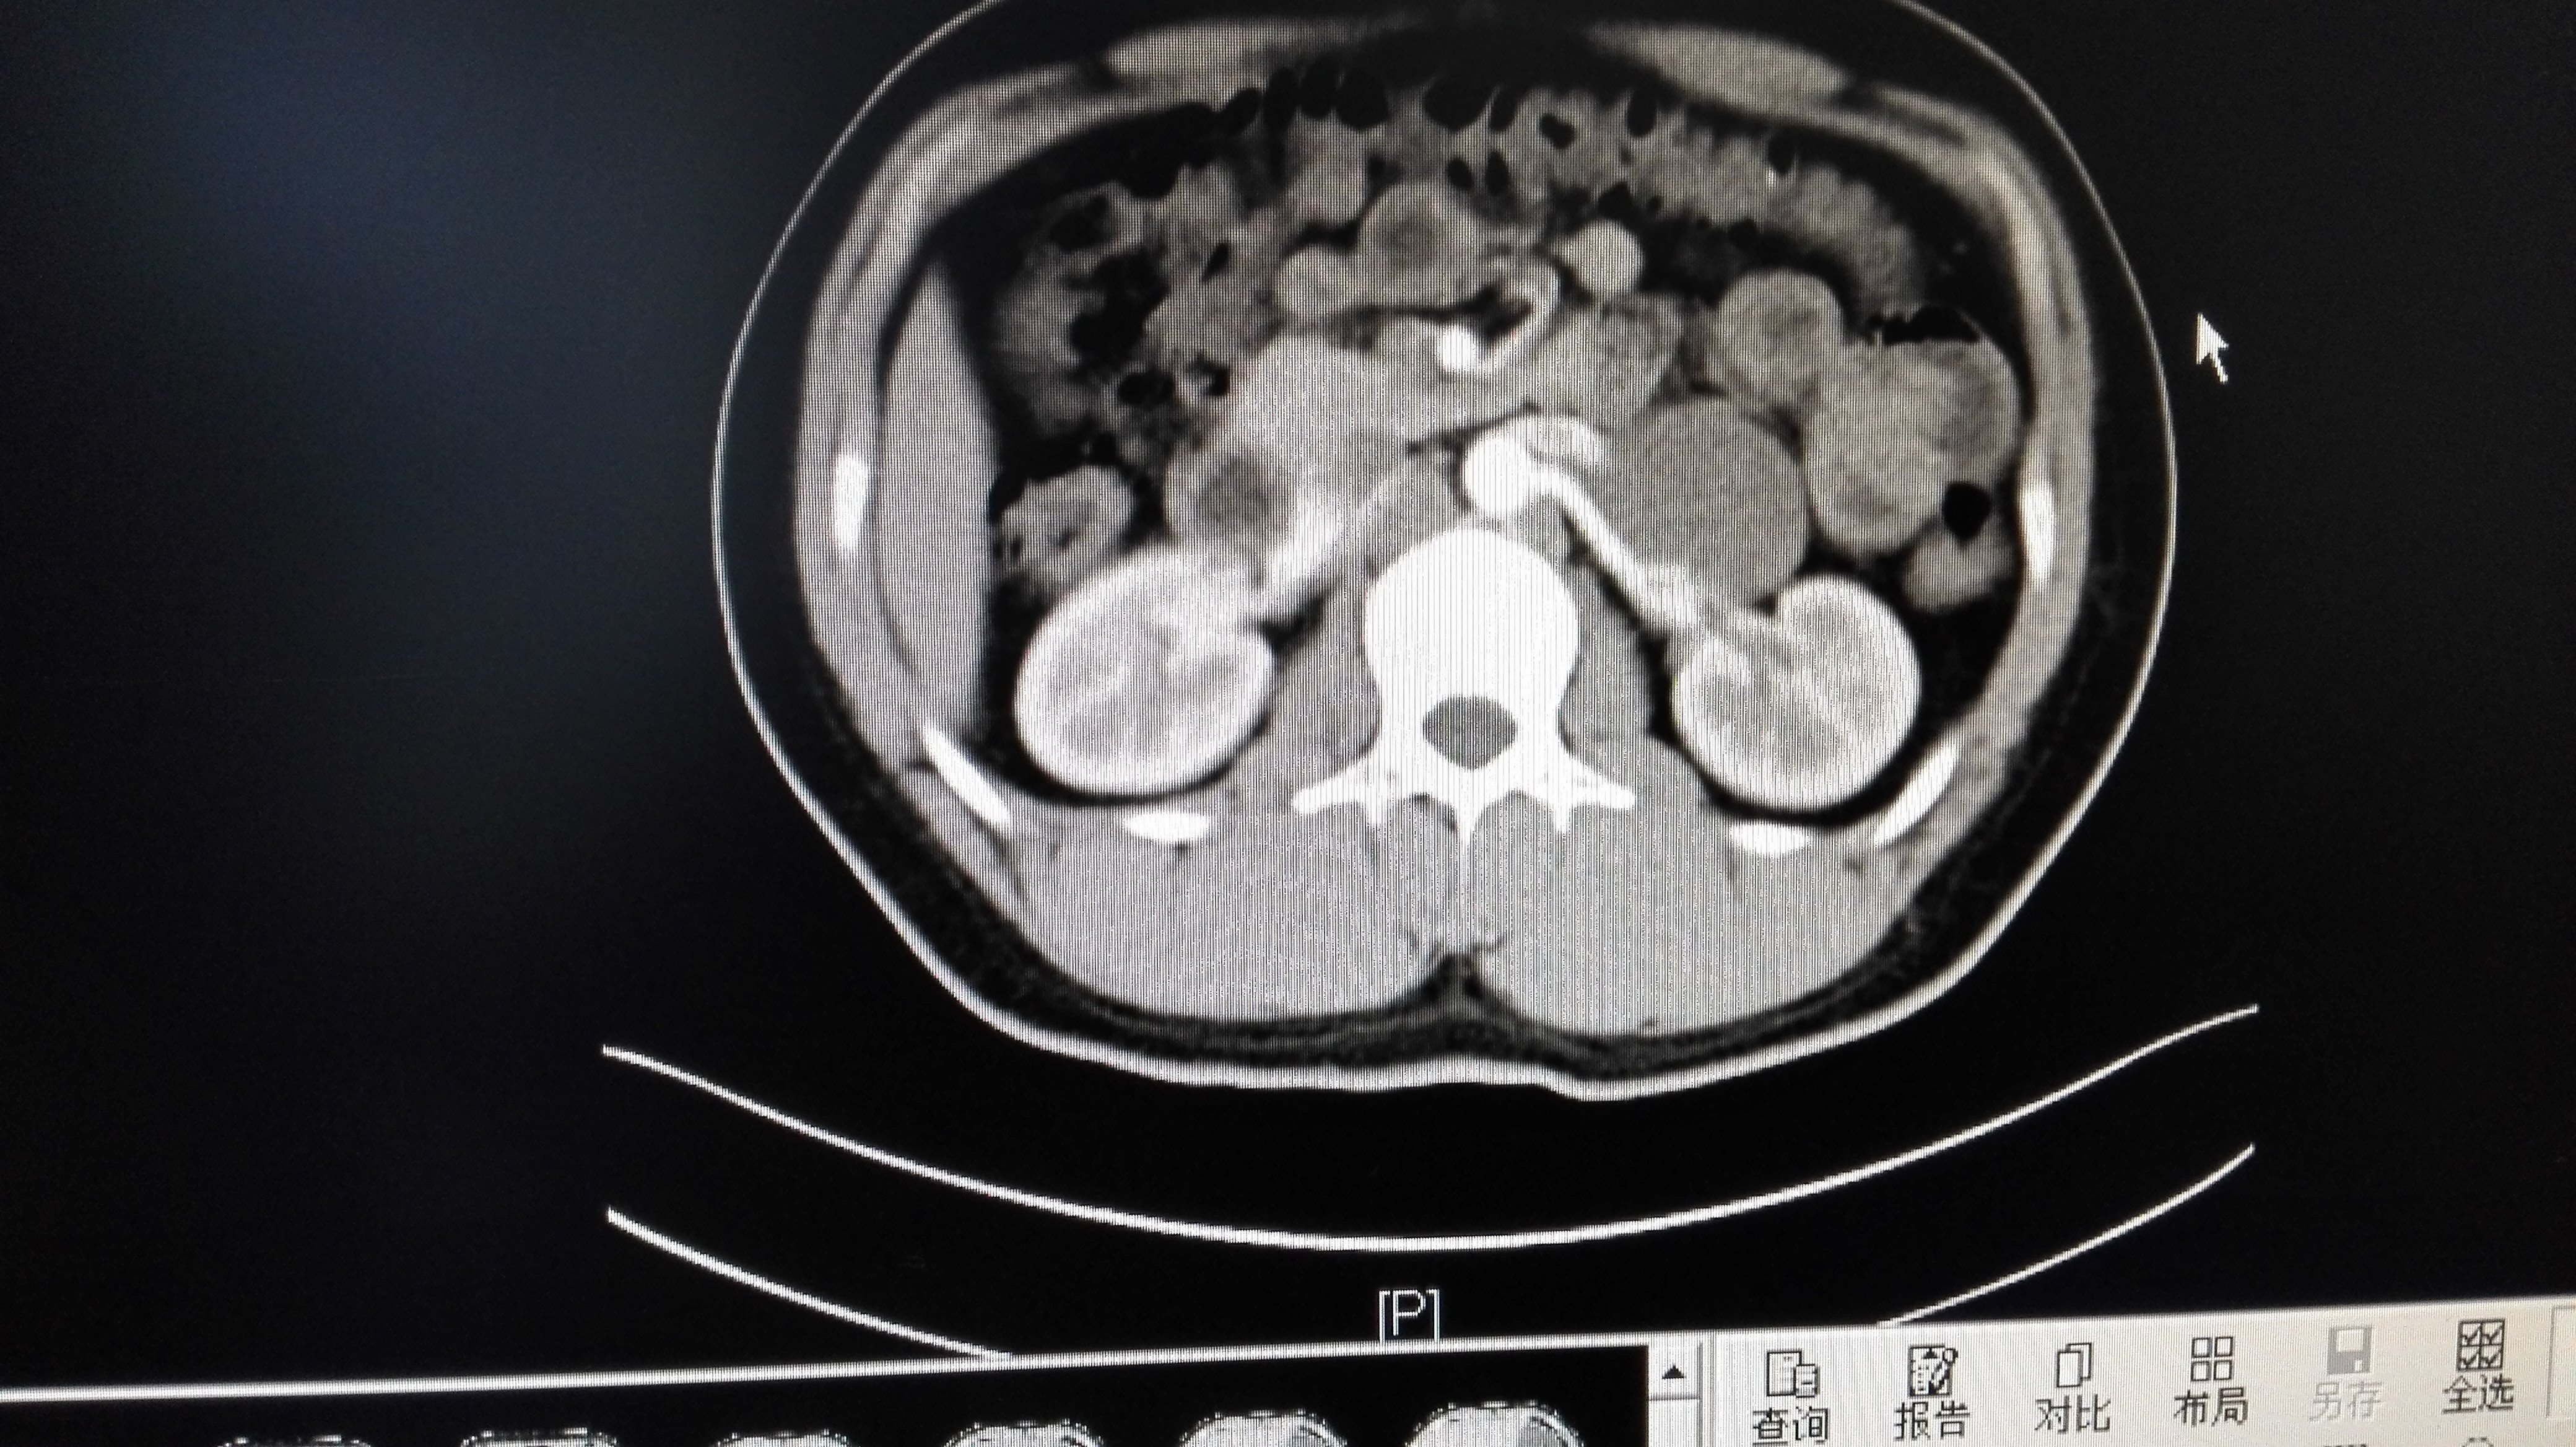 腹膜后肿瘤位置图片图片